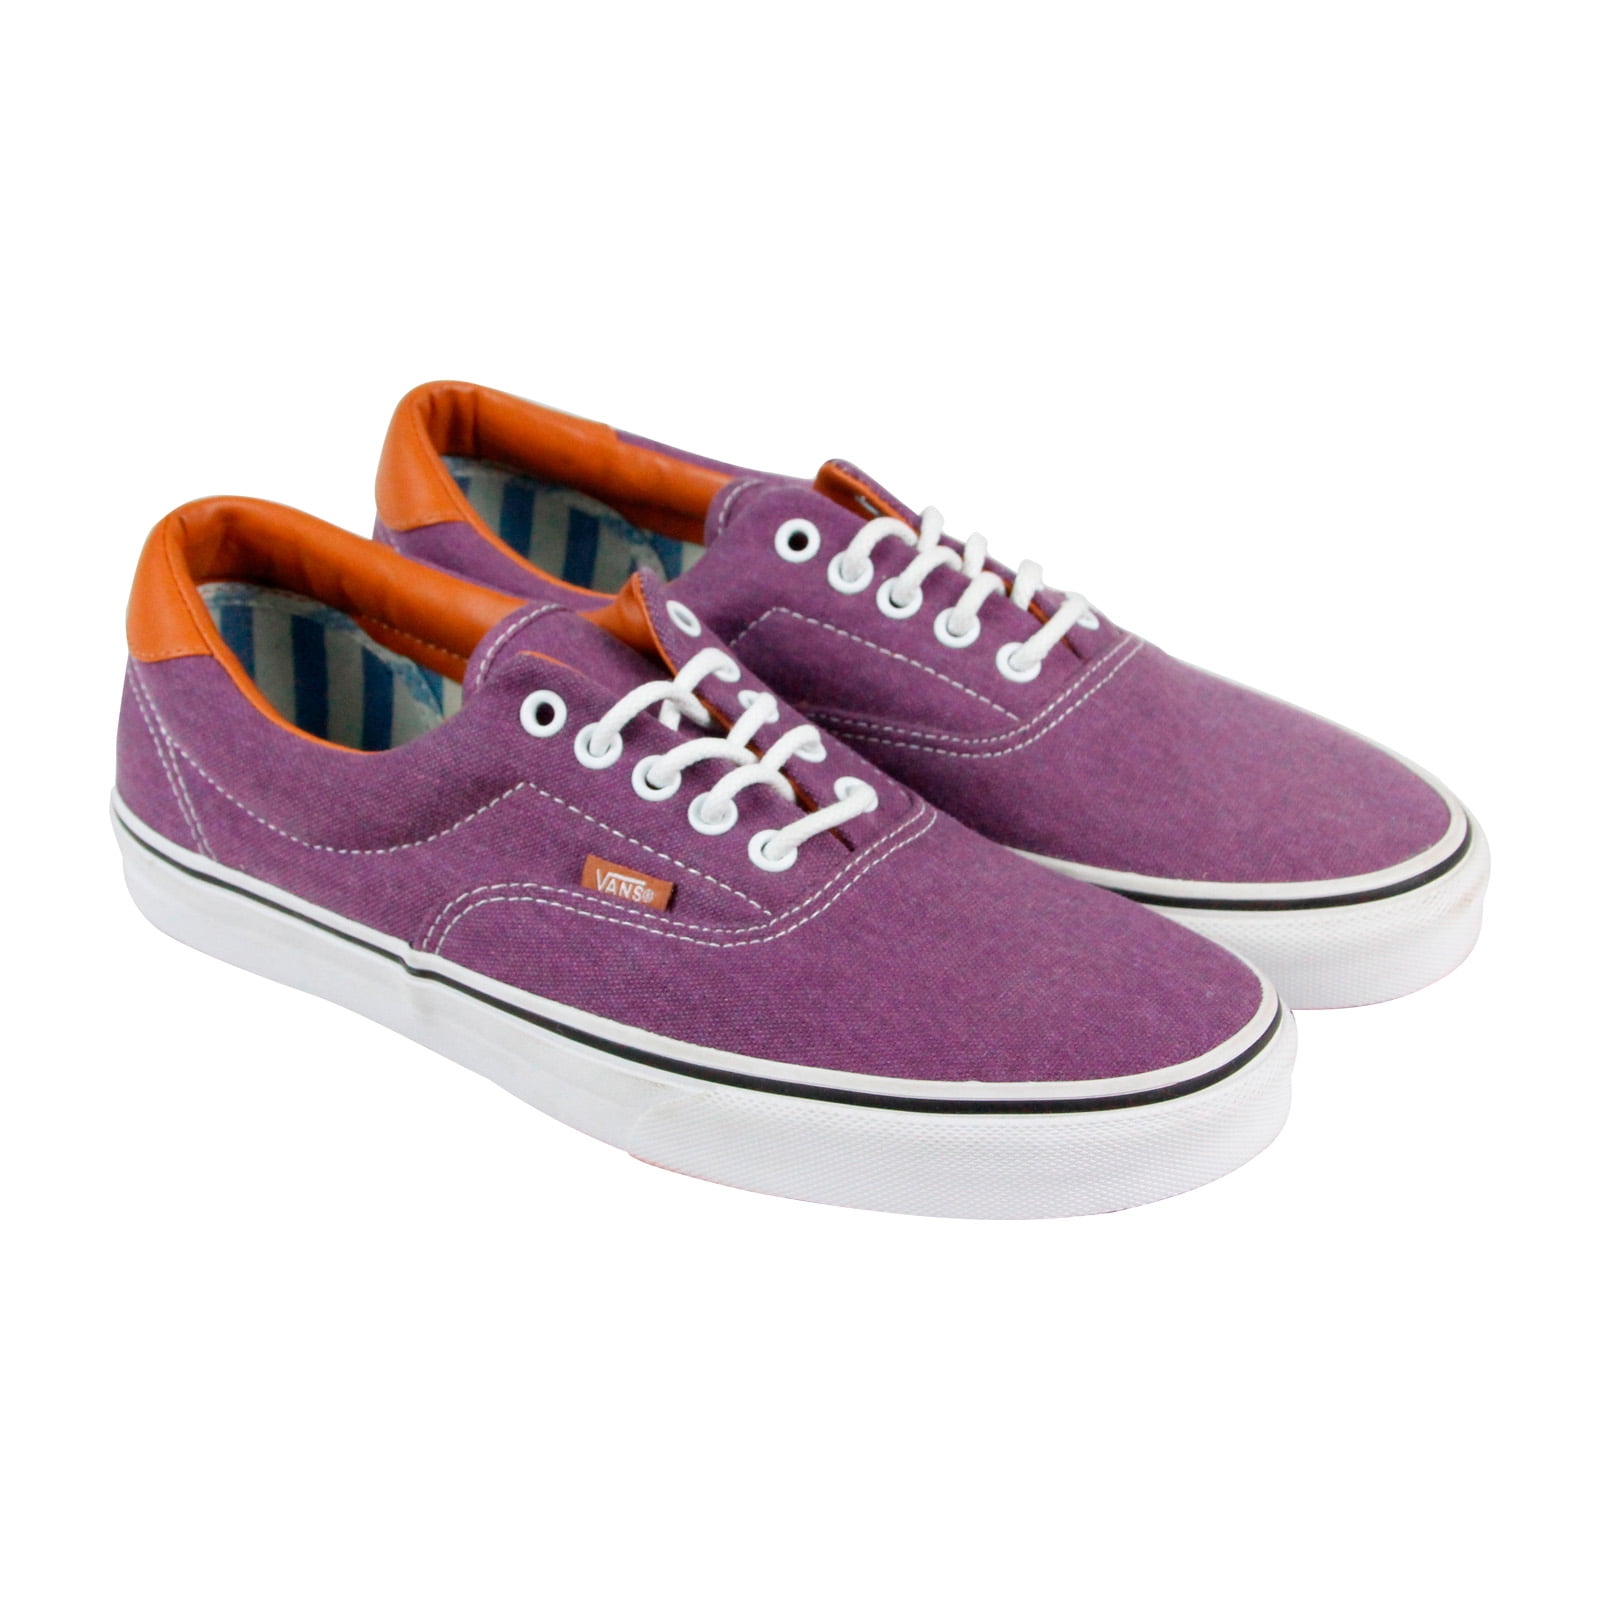 Vans Era 59 Mens Purple Canvas Up Up Shoes - Walmart.com